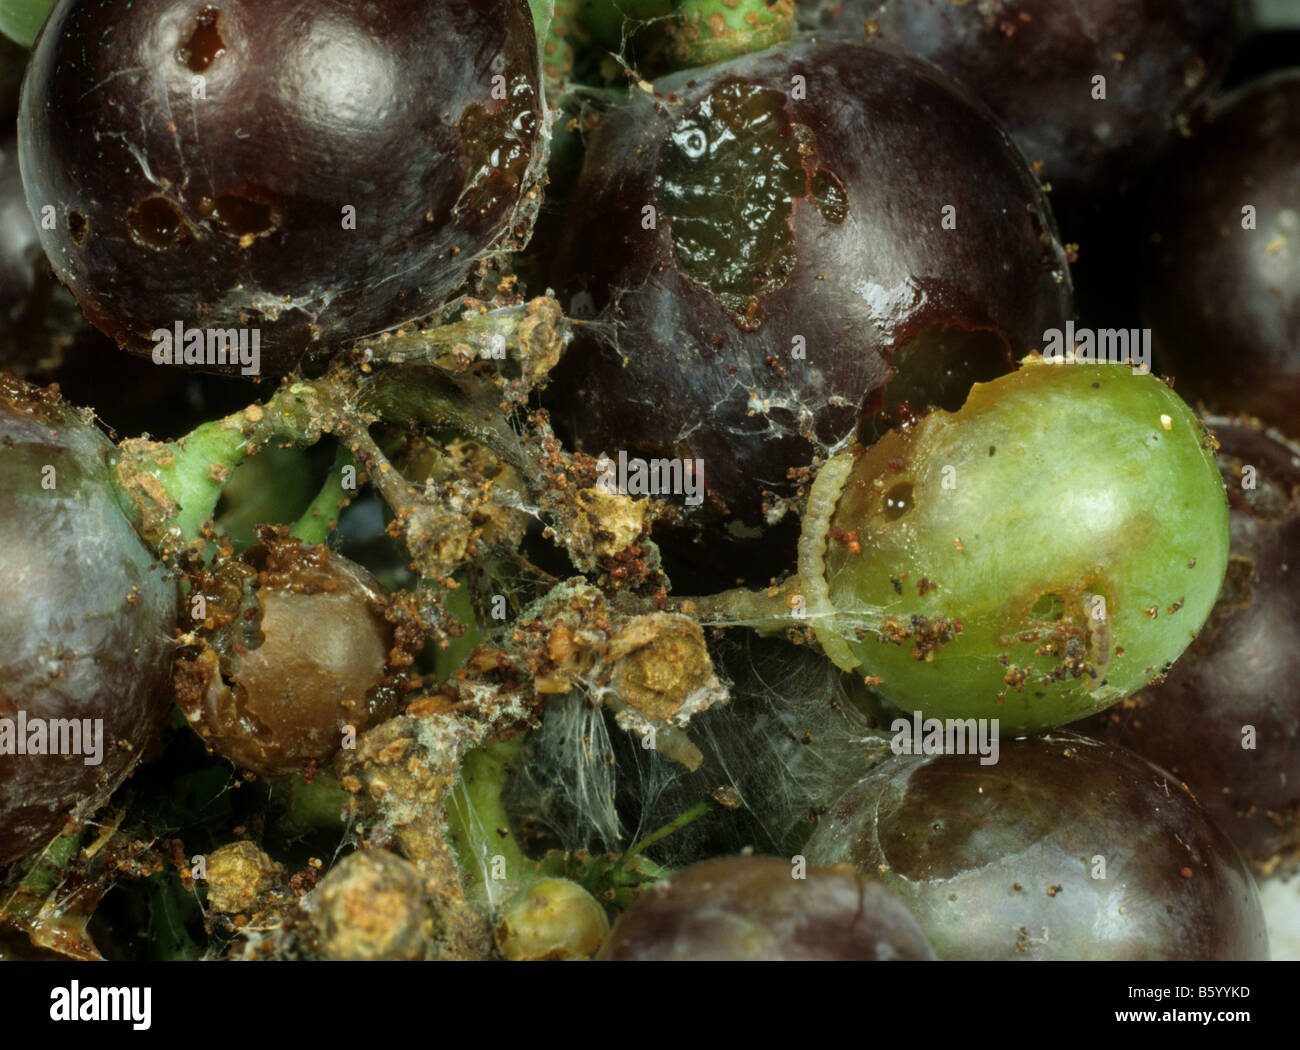 Unione tignole della vite Lobesia botrana danni caterpillar e nastro di uva frutta Foto Stock